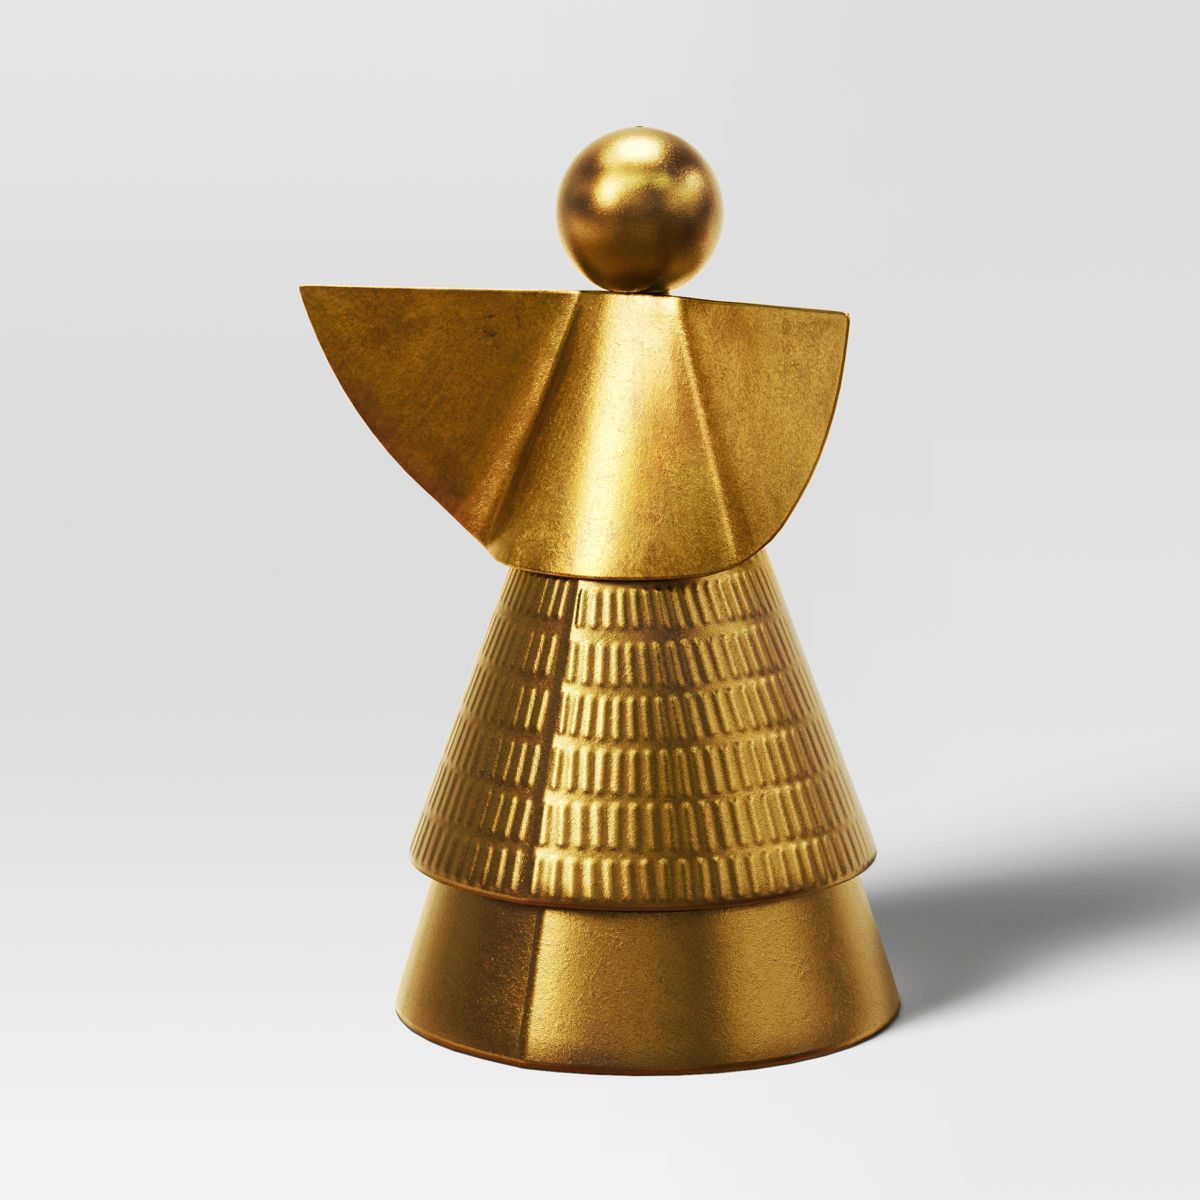 8" Metal Angel Figurine - Wondershop™ Gold | Target